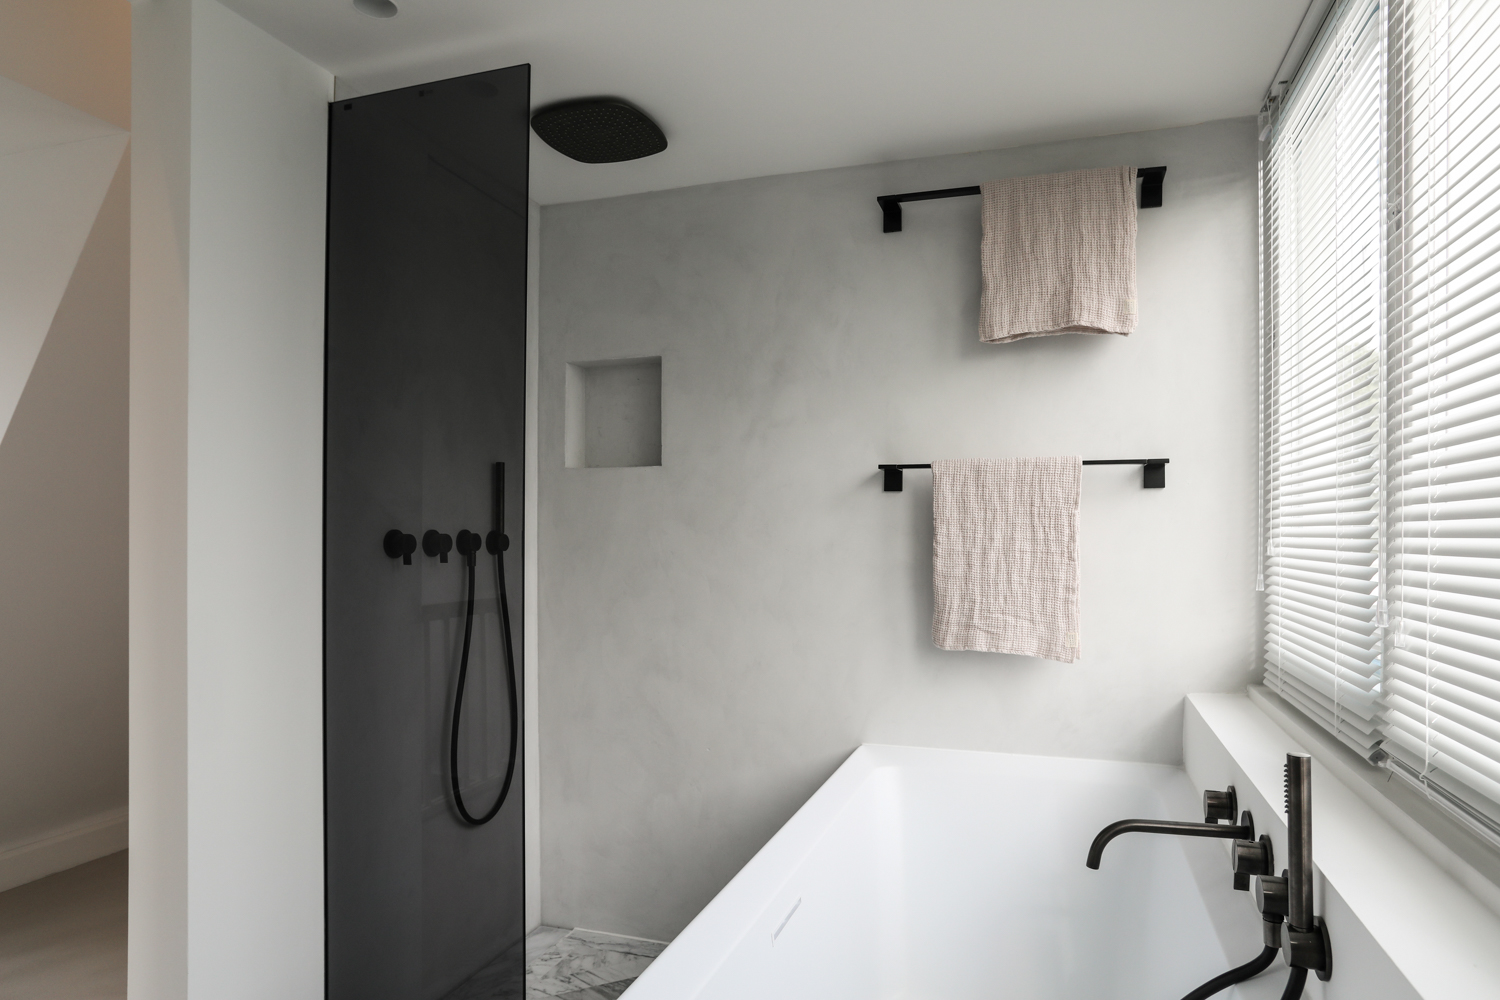 Exclusieve badkamer in een luxe turnkey penthouse appartement